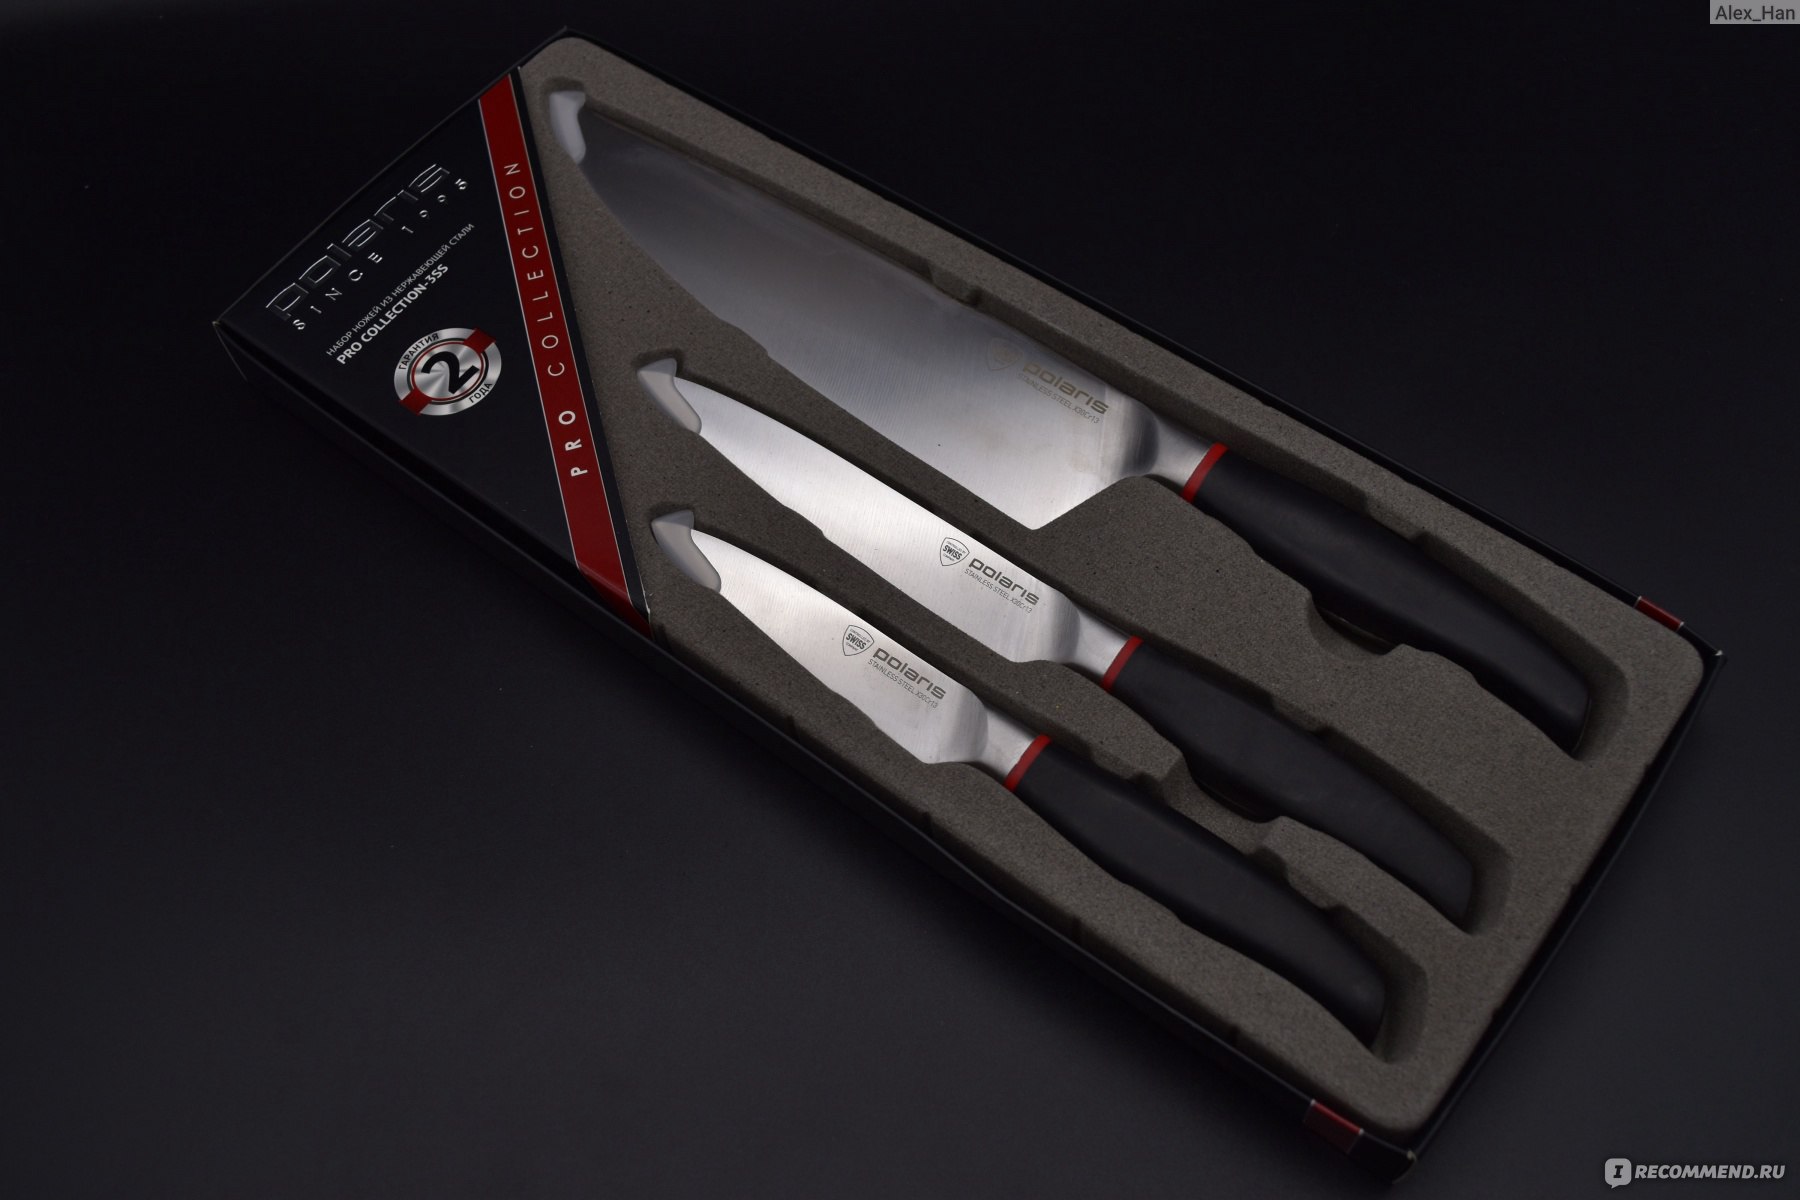 Набор сс. Набор ножей Polaris Pro collection-3ss. Polaris Pro collection-3ss. Ножи Поларис 3ss. Набор Polaris Pro collection-3ss, 3 ножа.